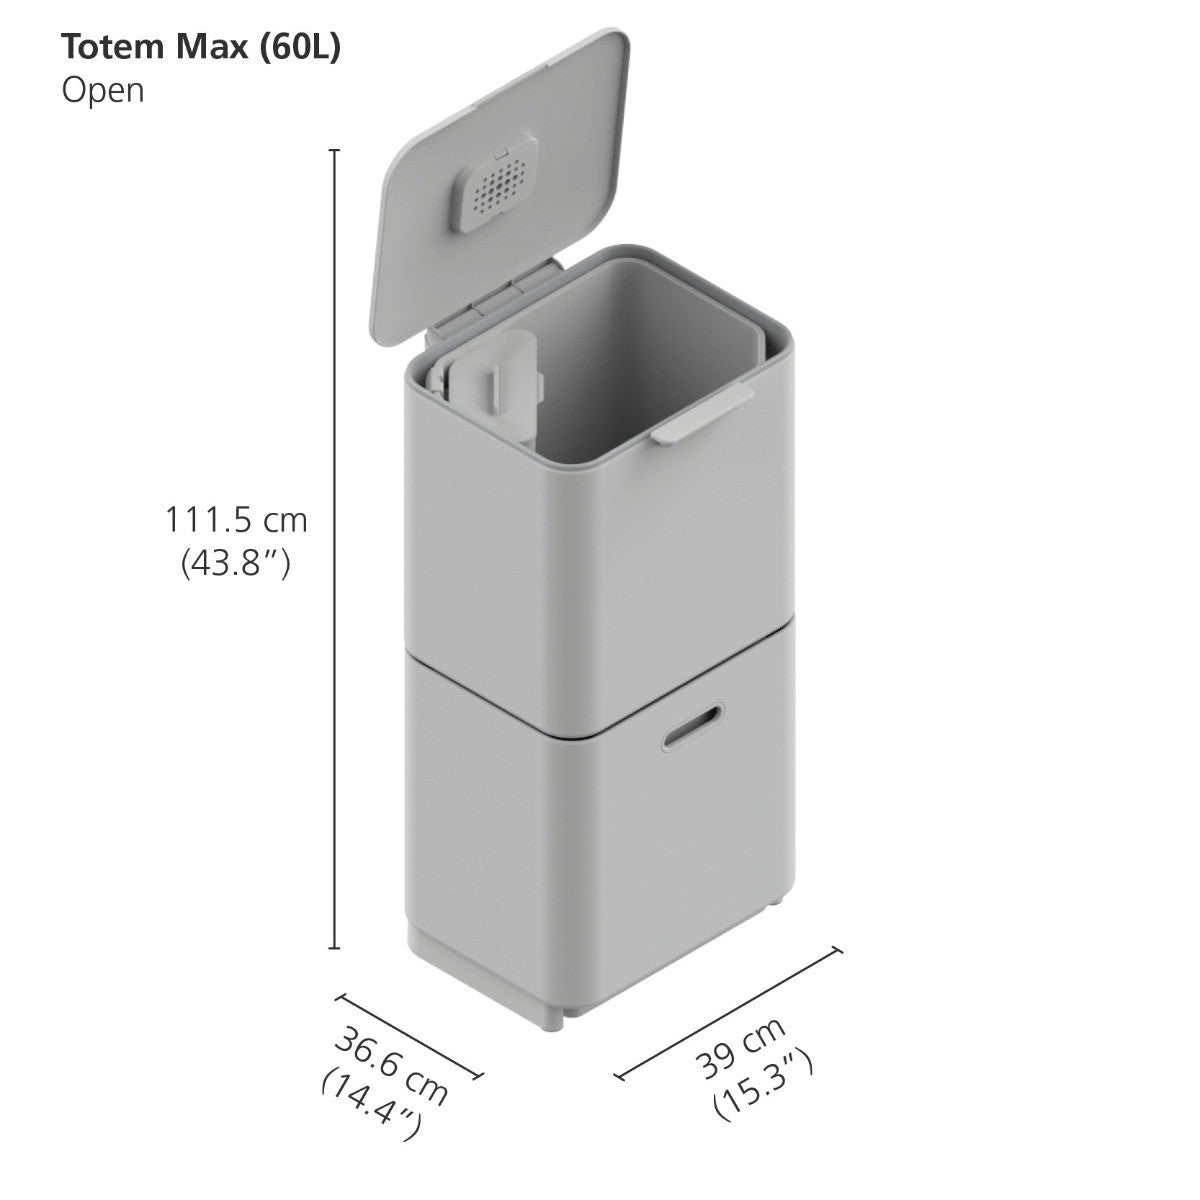 Joseph Joseph 3-Compartment Totem Max 60 Litre Kitchen Recycling Bin in graphite 30062 dimensions when open